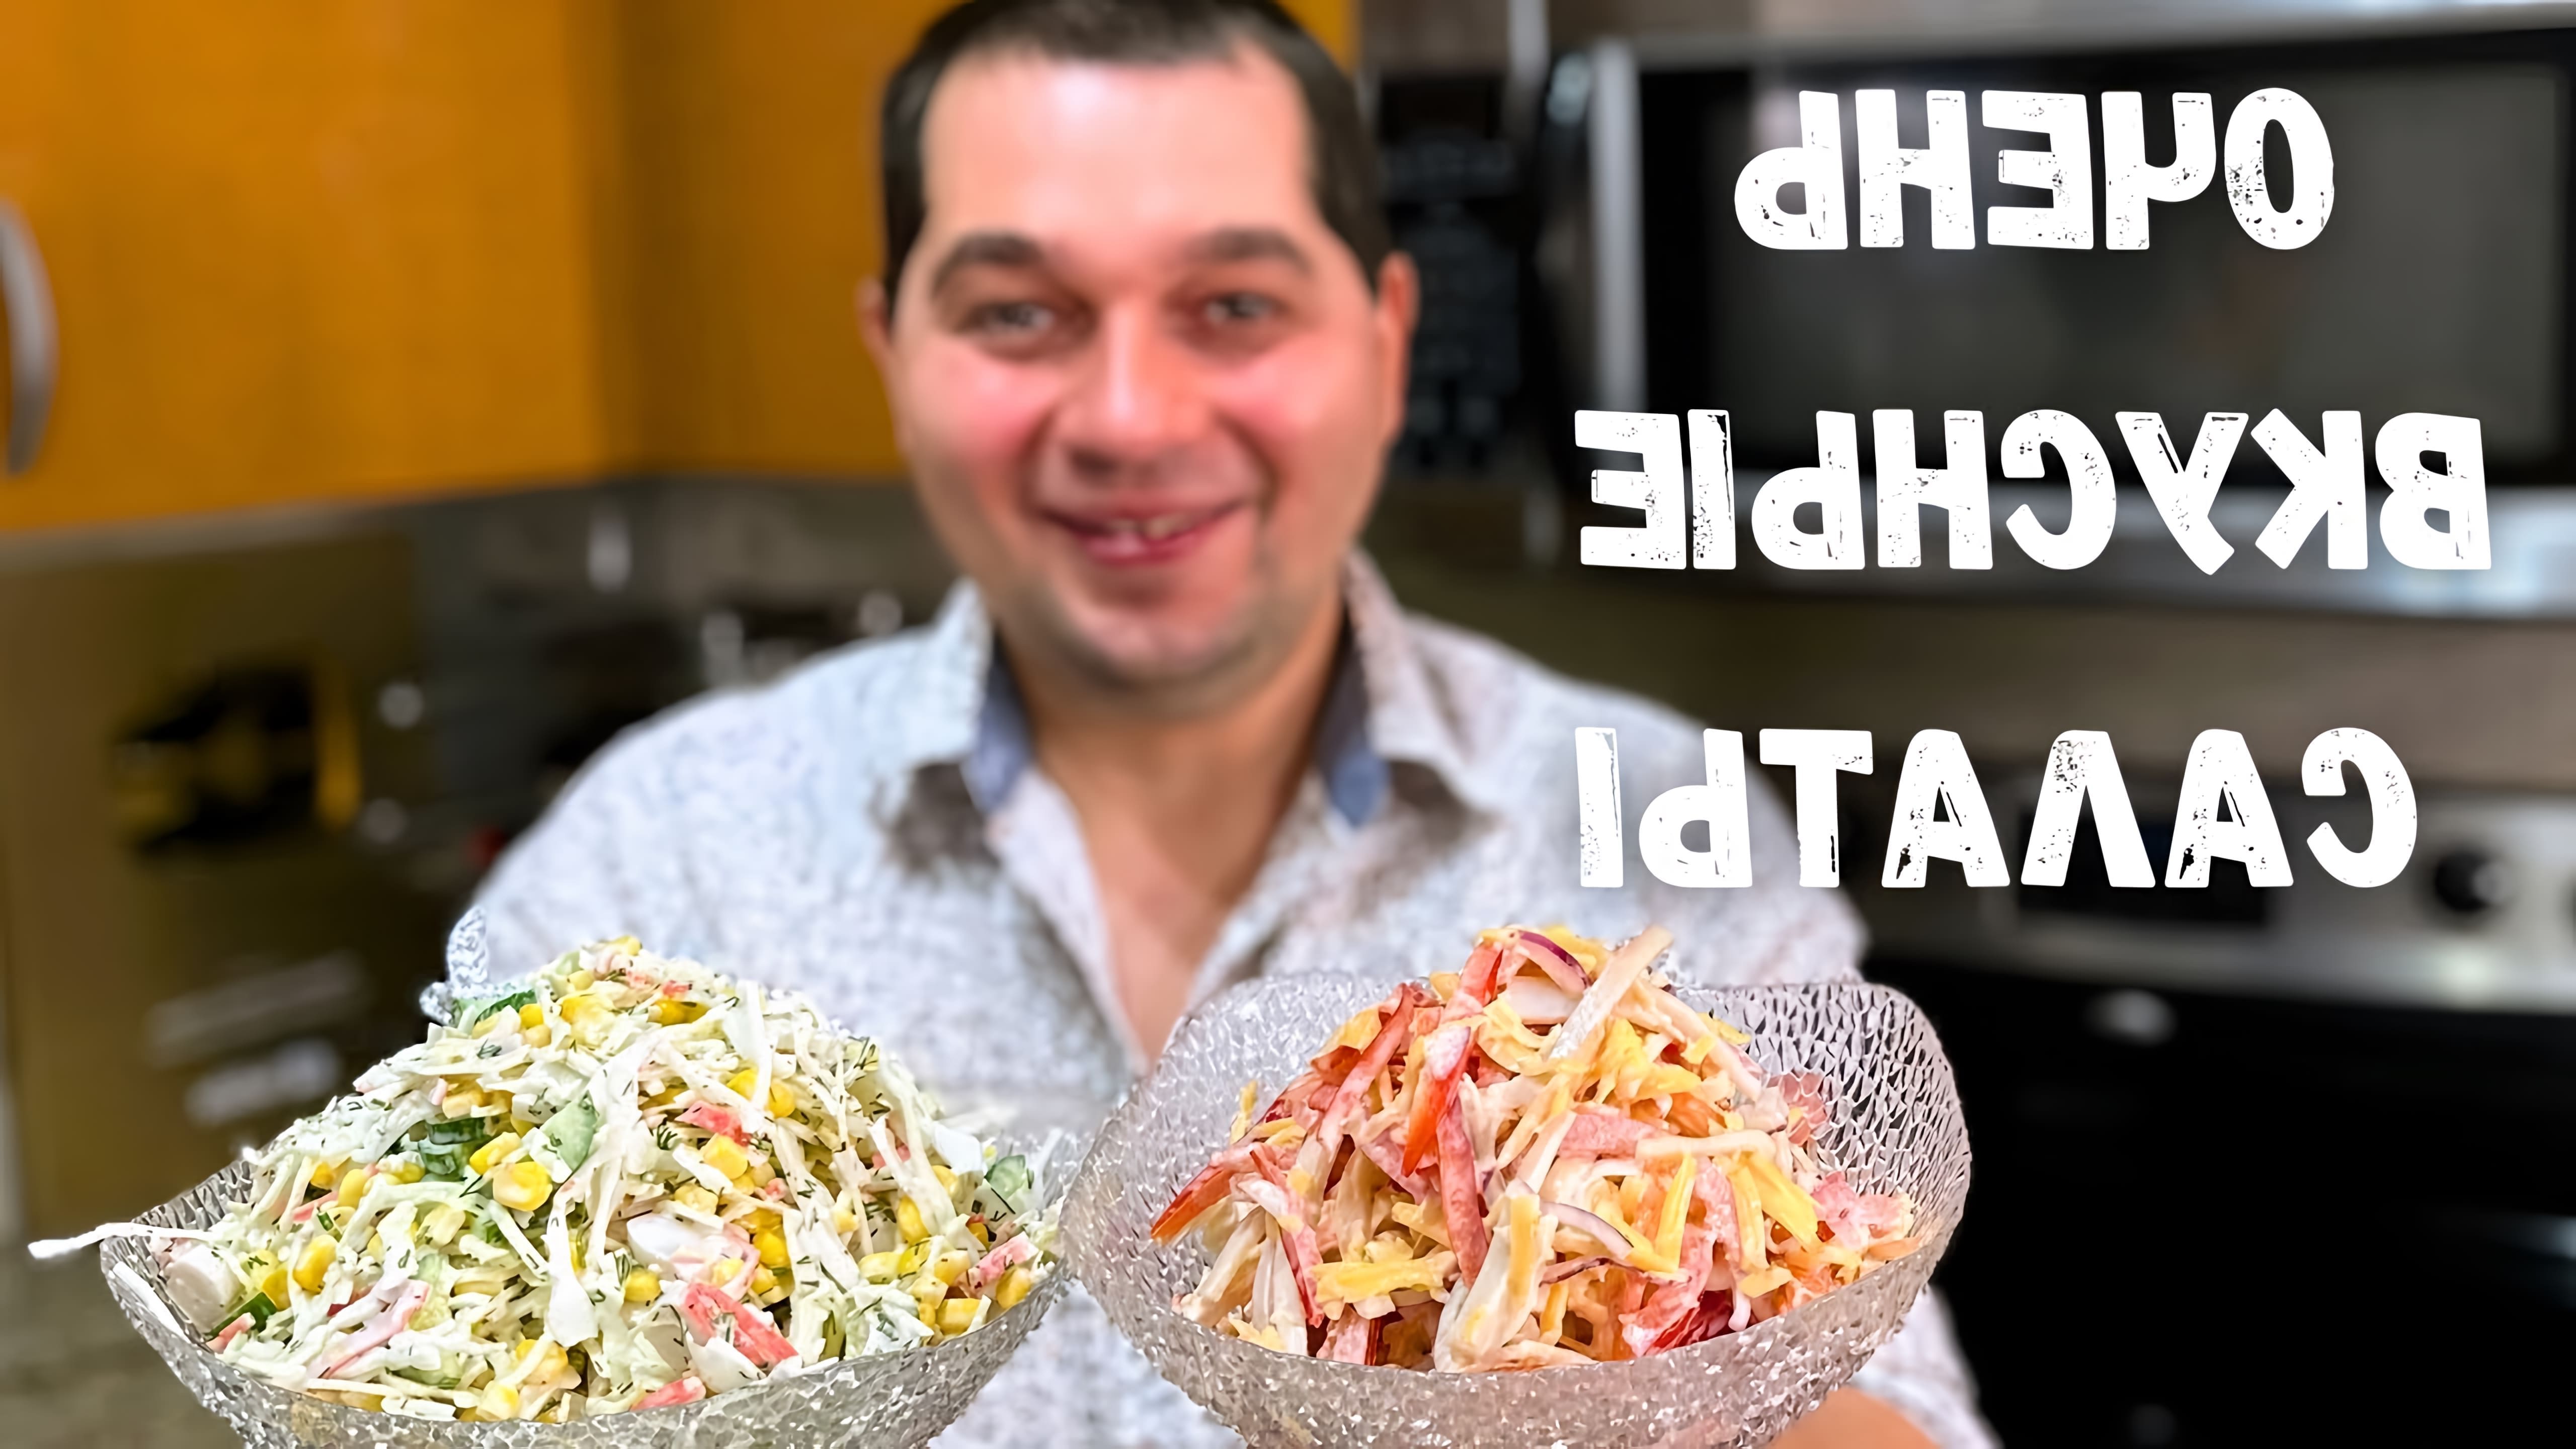 В этом видео демонстрируются два рецепта салатов из крабовых палочек, которые можно приготовить на праздничный стол